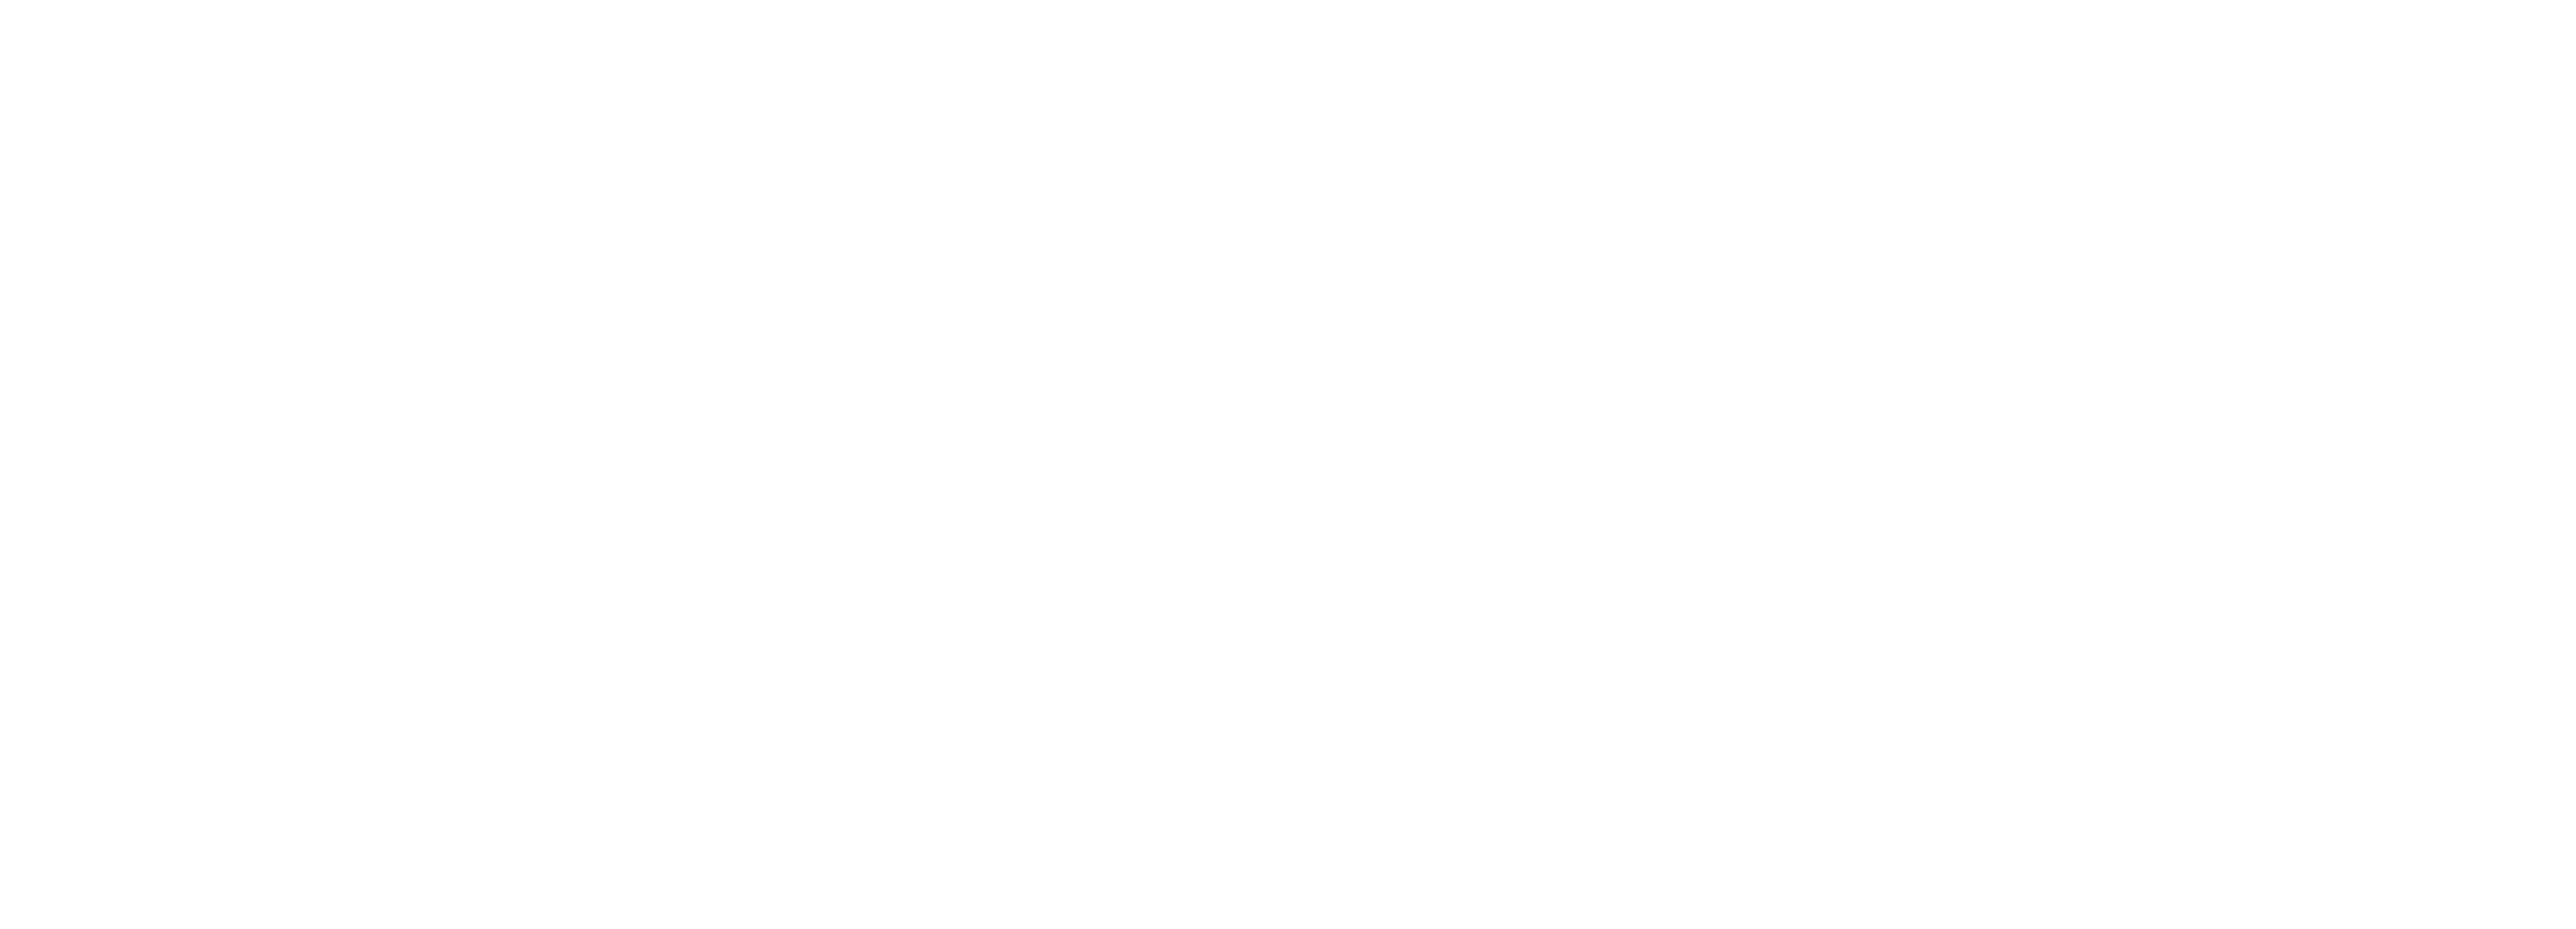 CompassWomen_WebTopper